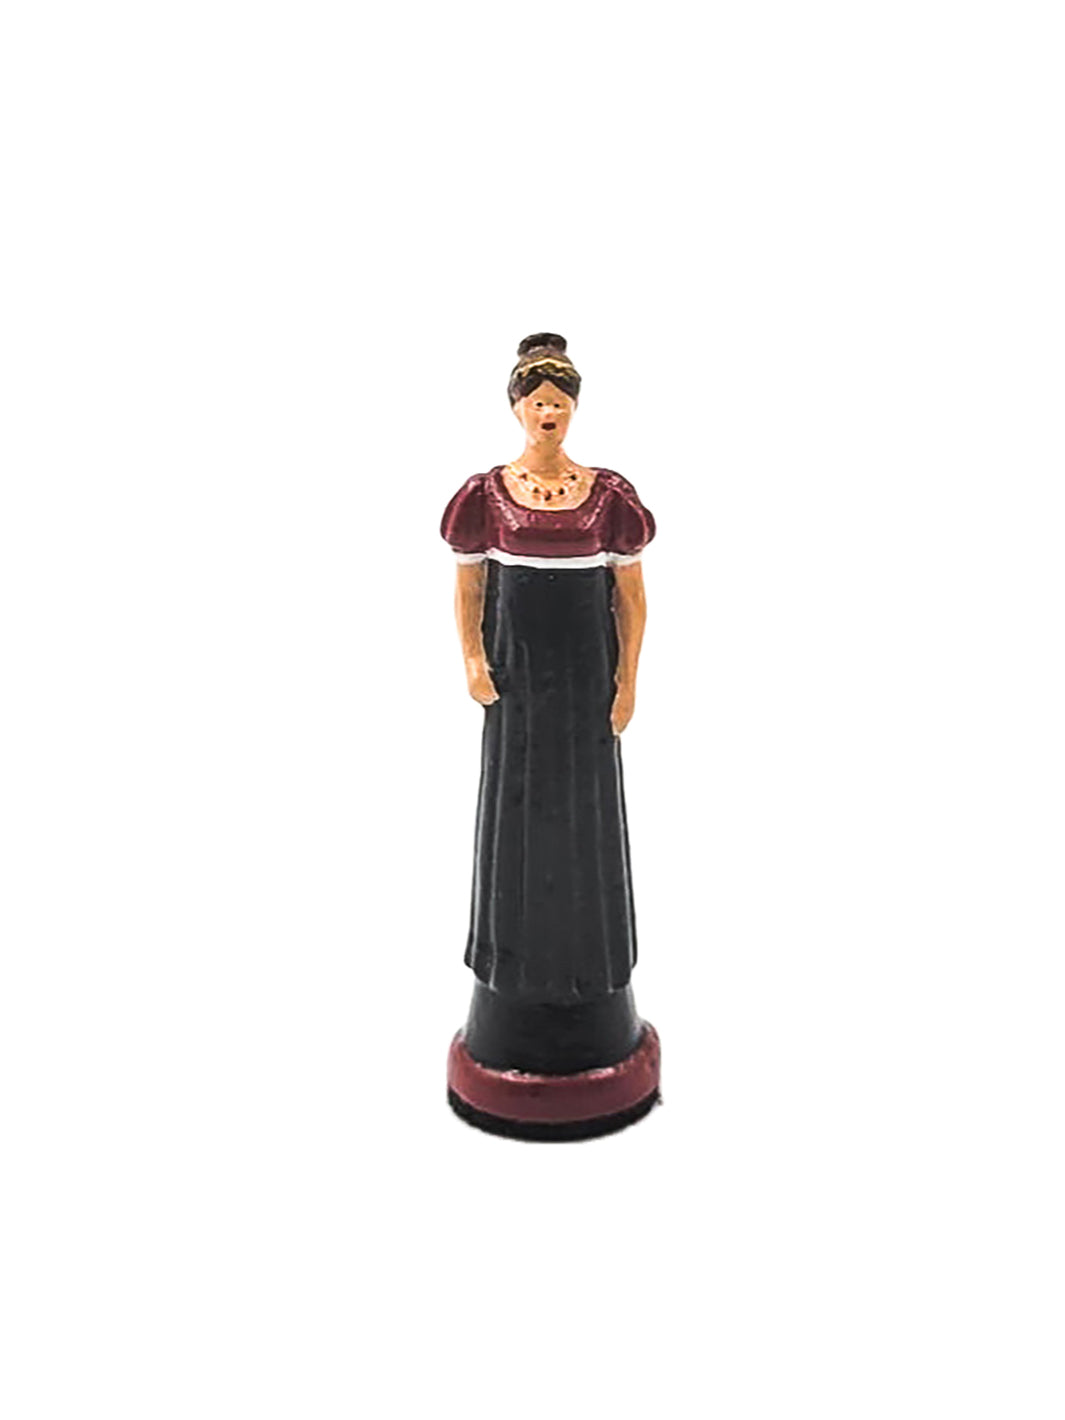 Reine de jeu d'échec avec robe historique rouge vue de devant